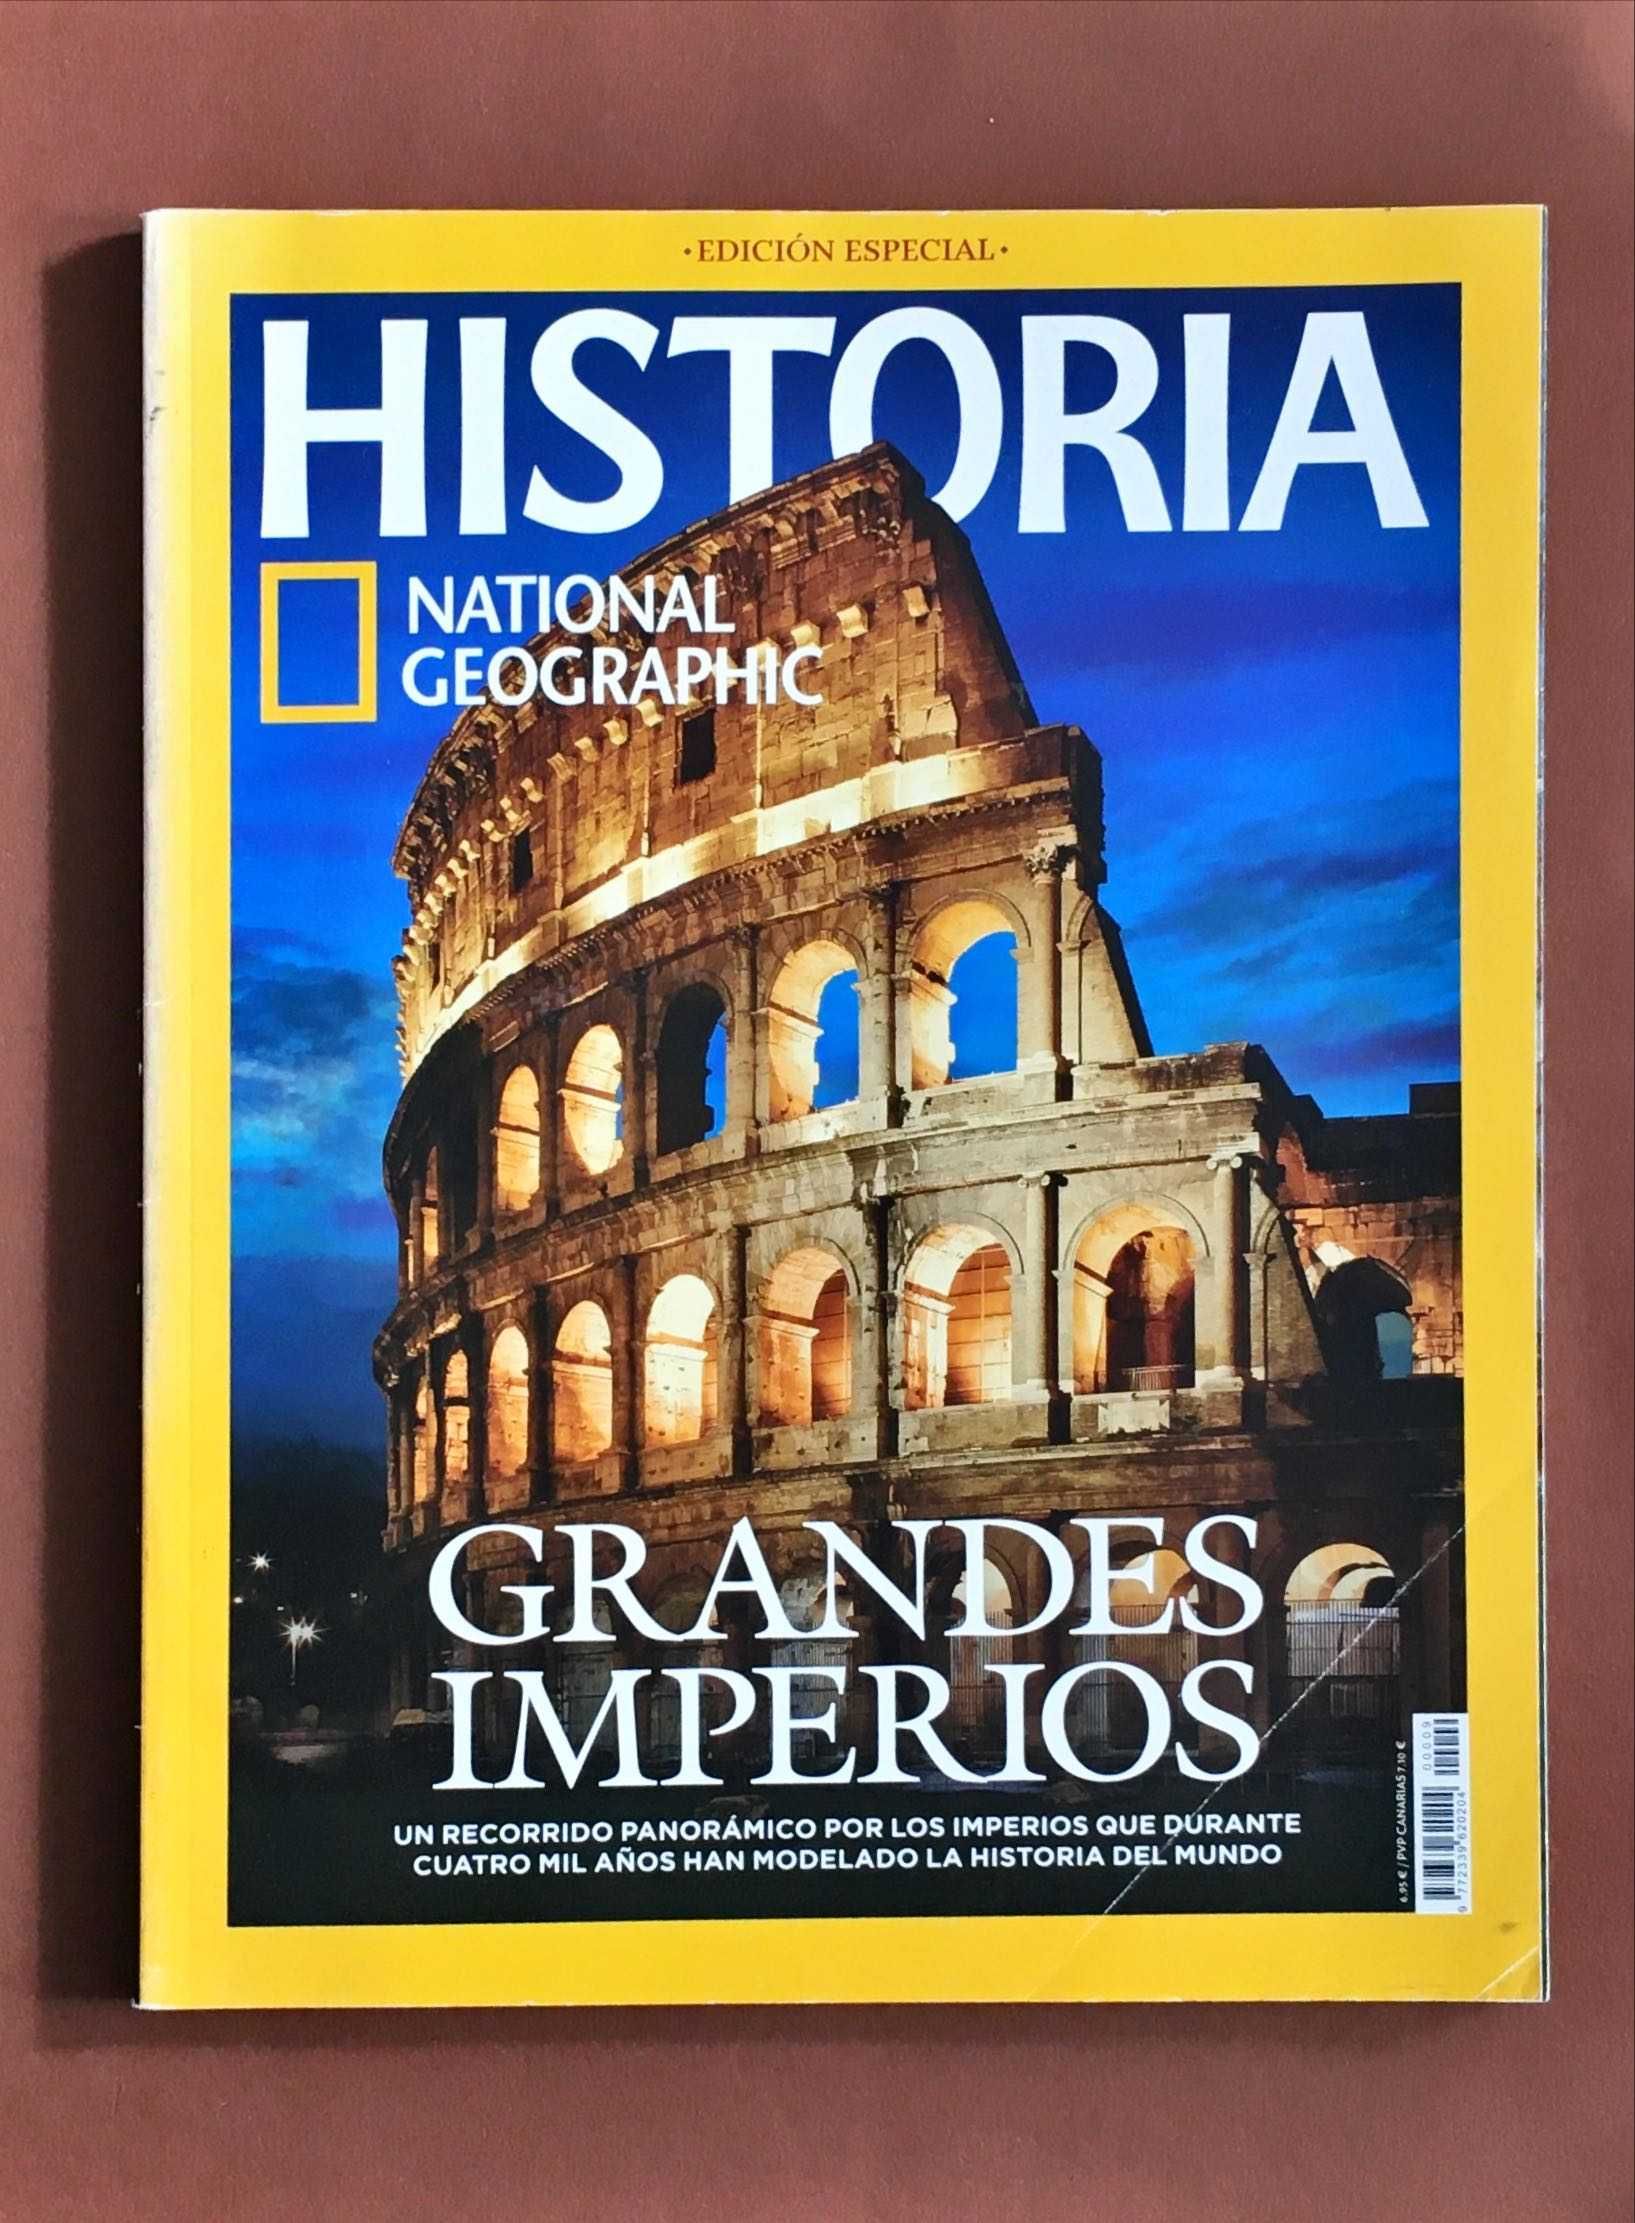 REVISTA National Geographic [2€ cada] Edição Espanhola